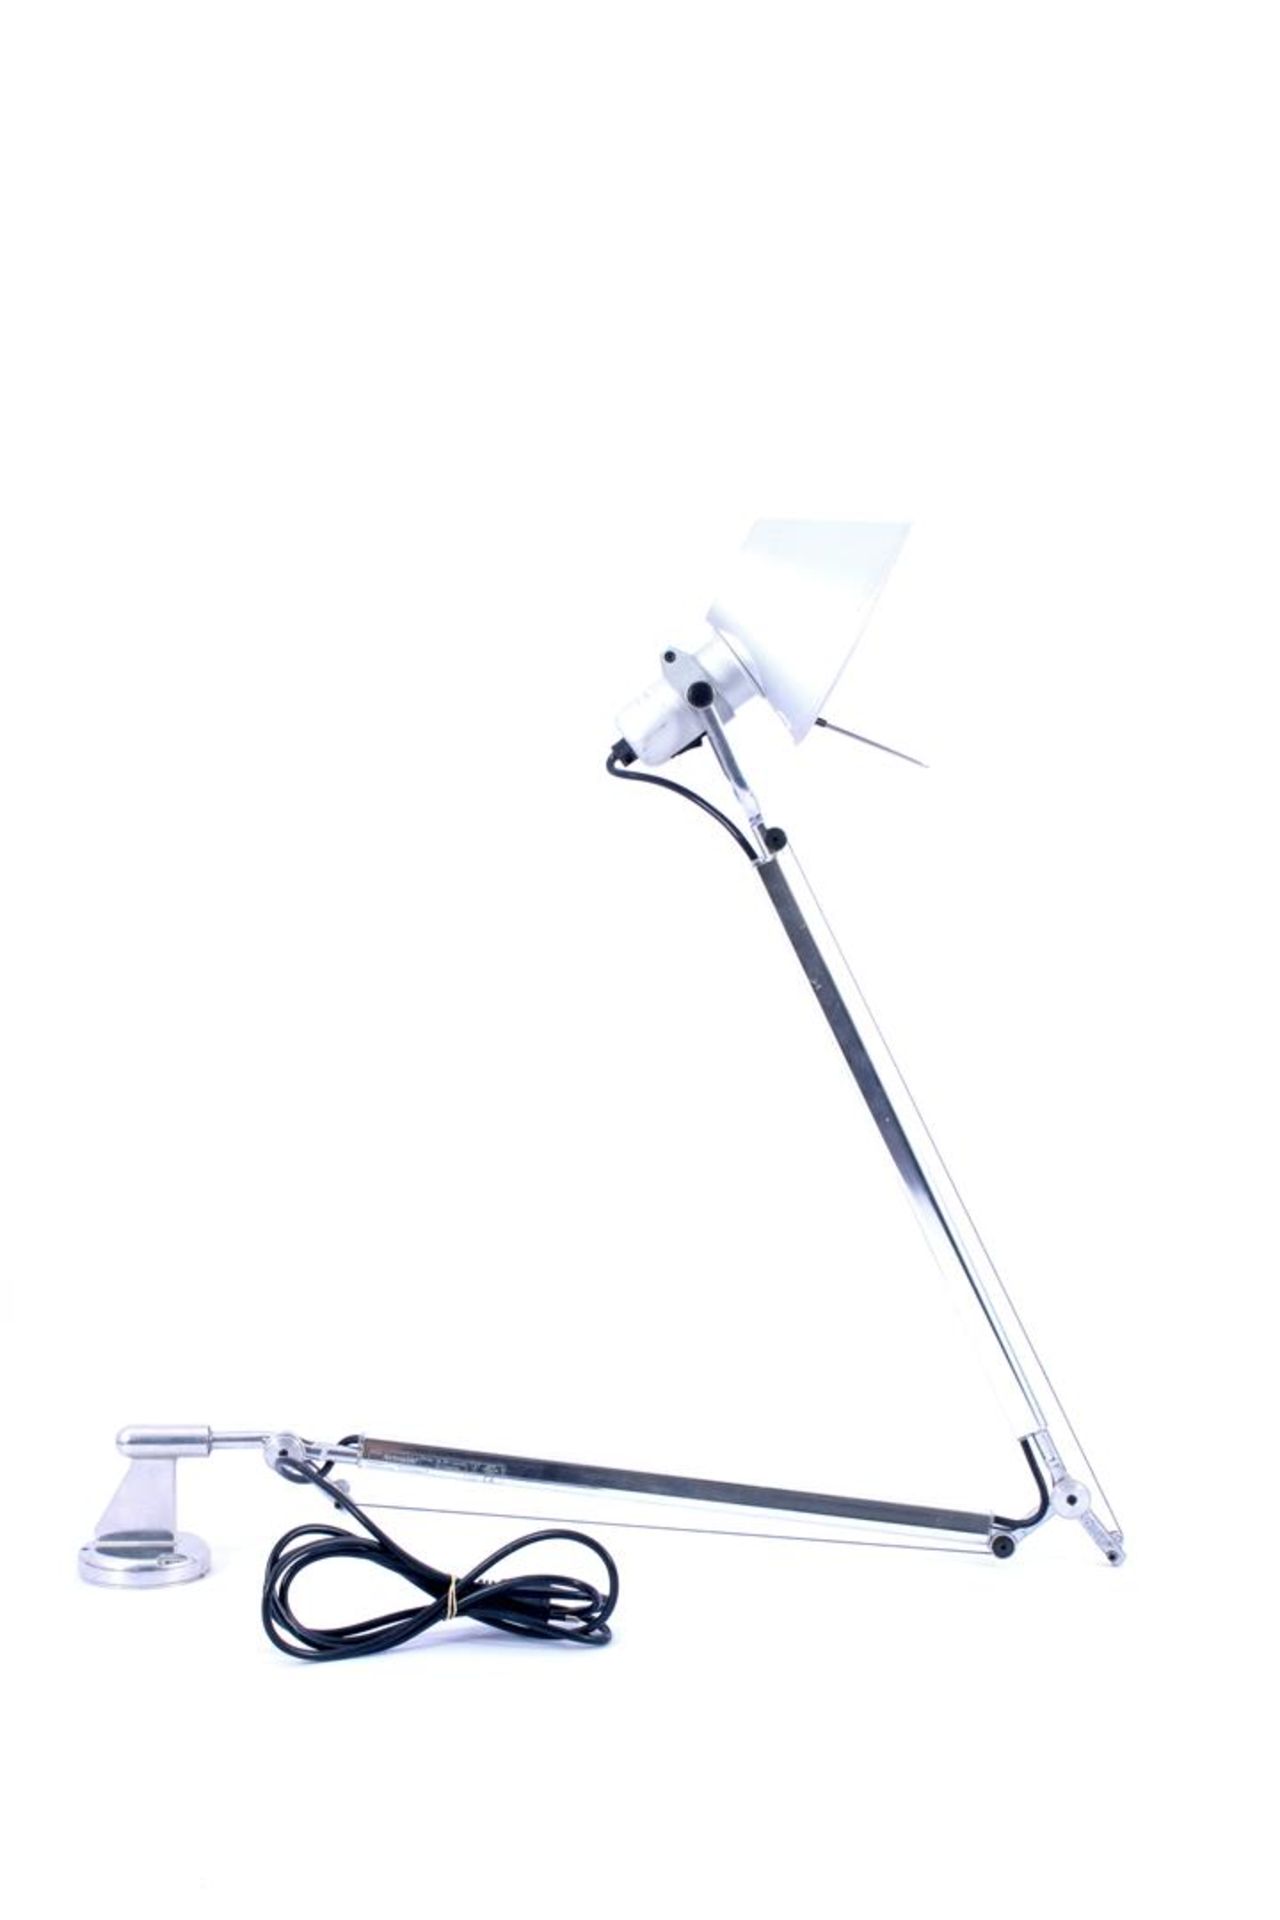 Artemide, ontwerp M de Lucchi metalen wandlamp, model Tolomeo